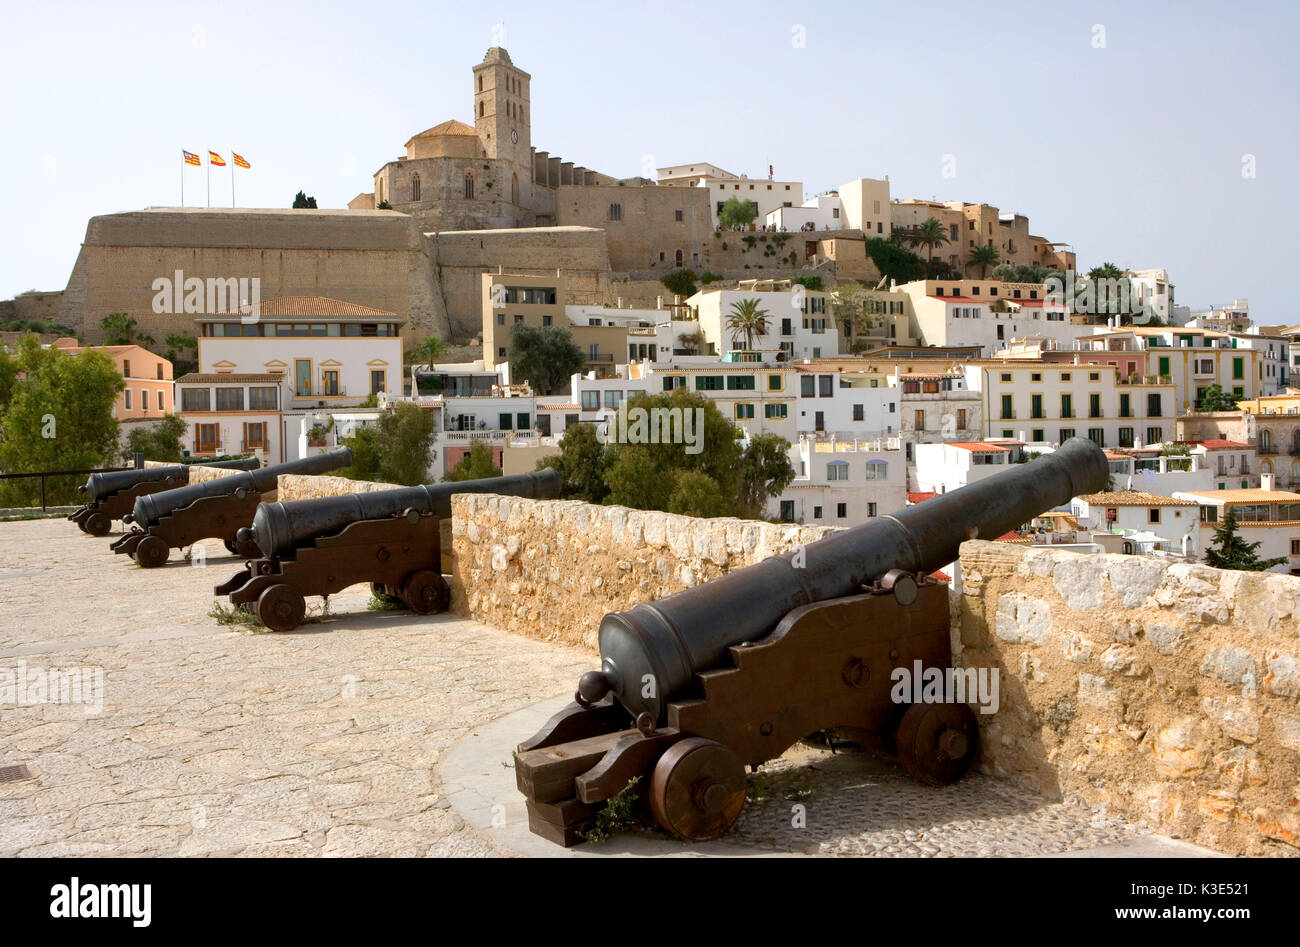 Eivissa - Hauptstadt von Ibiza - Blick auf die Altstadt Dalt Vila - Kathedrale Santa Maria de las Nieves - alte Kanonen Stockfoto